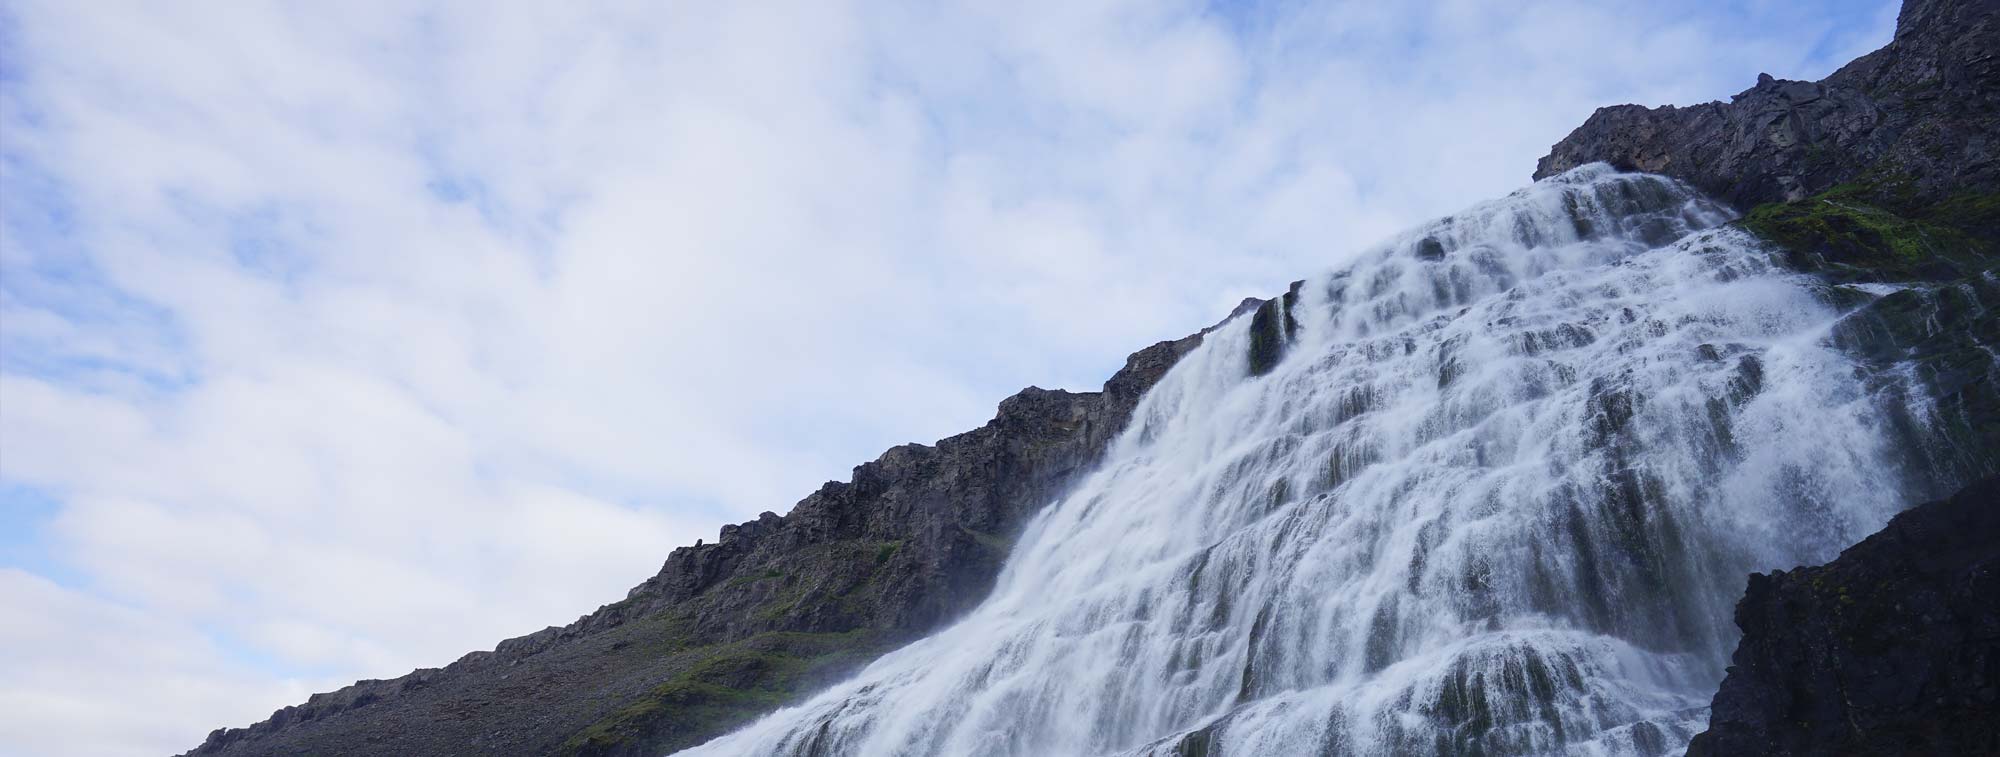 Foto: Wasserfall